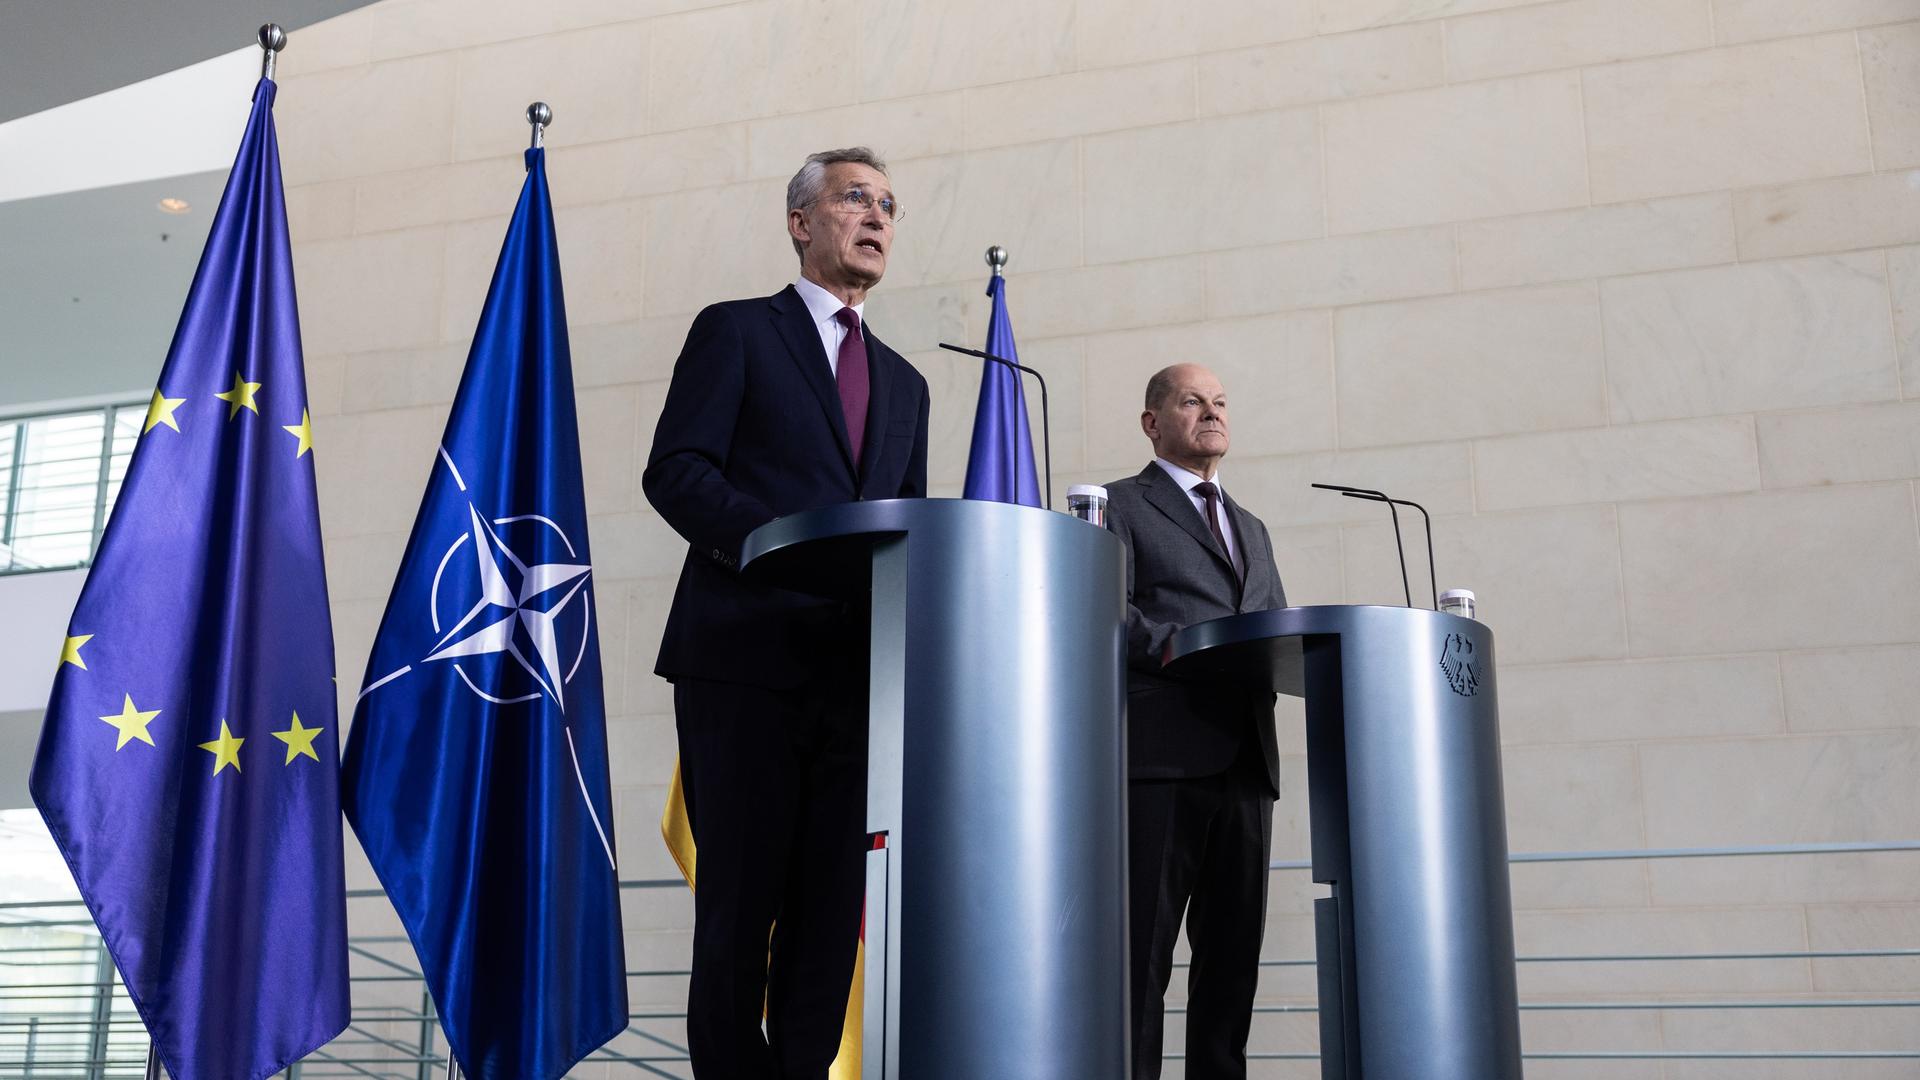 Jens Stoltenberg (links), Generalsekretär der NATO, und Bundeskanzler Olaf Scholz stehen bei einer Pressekonferenz vor Flaggen der EU und der NATO im Kanzleramt.